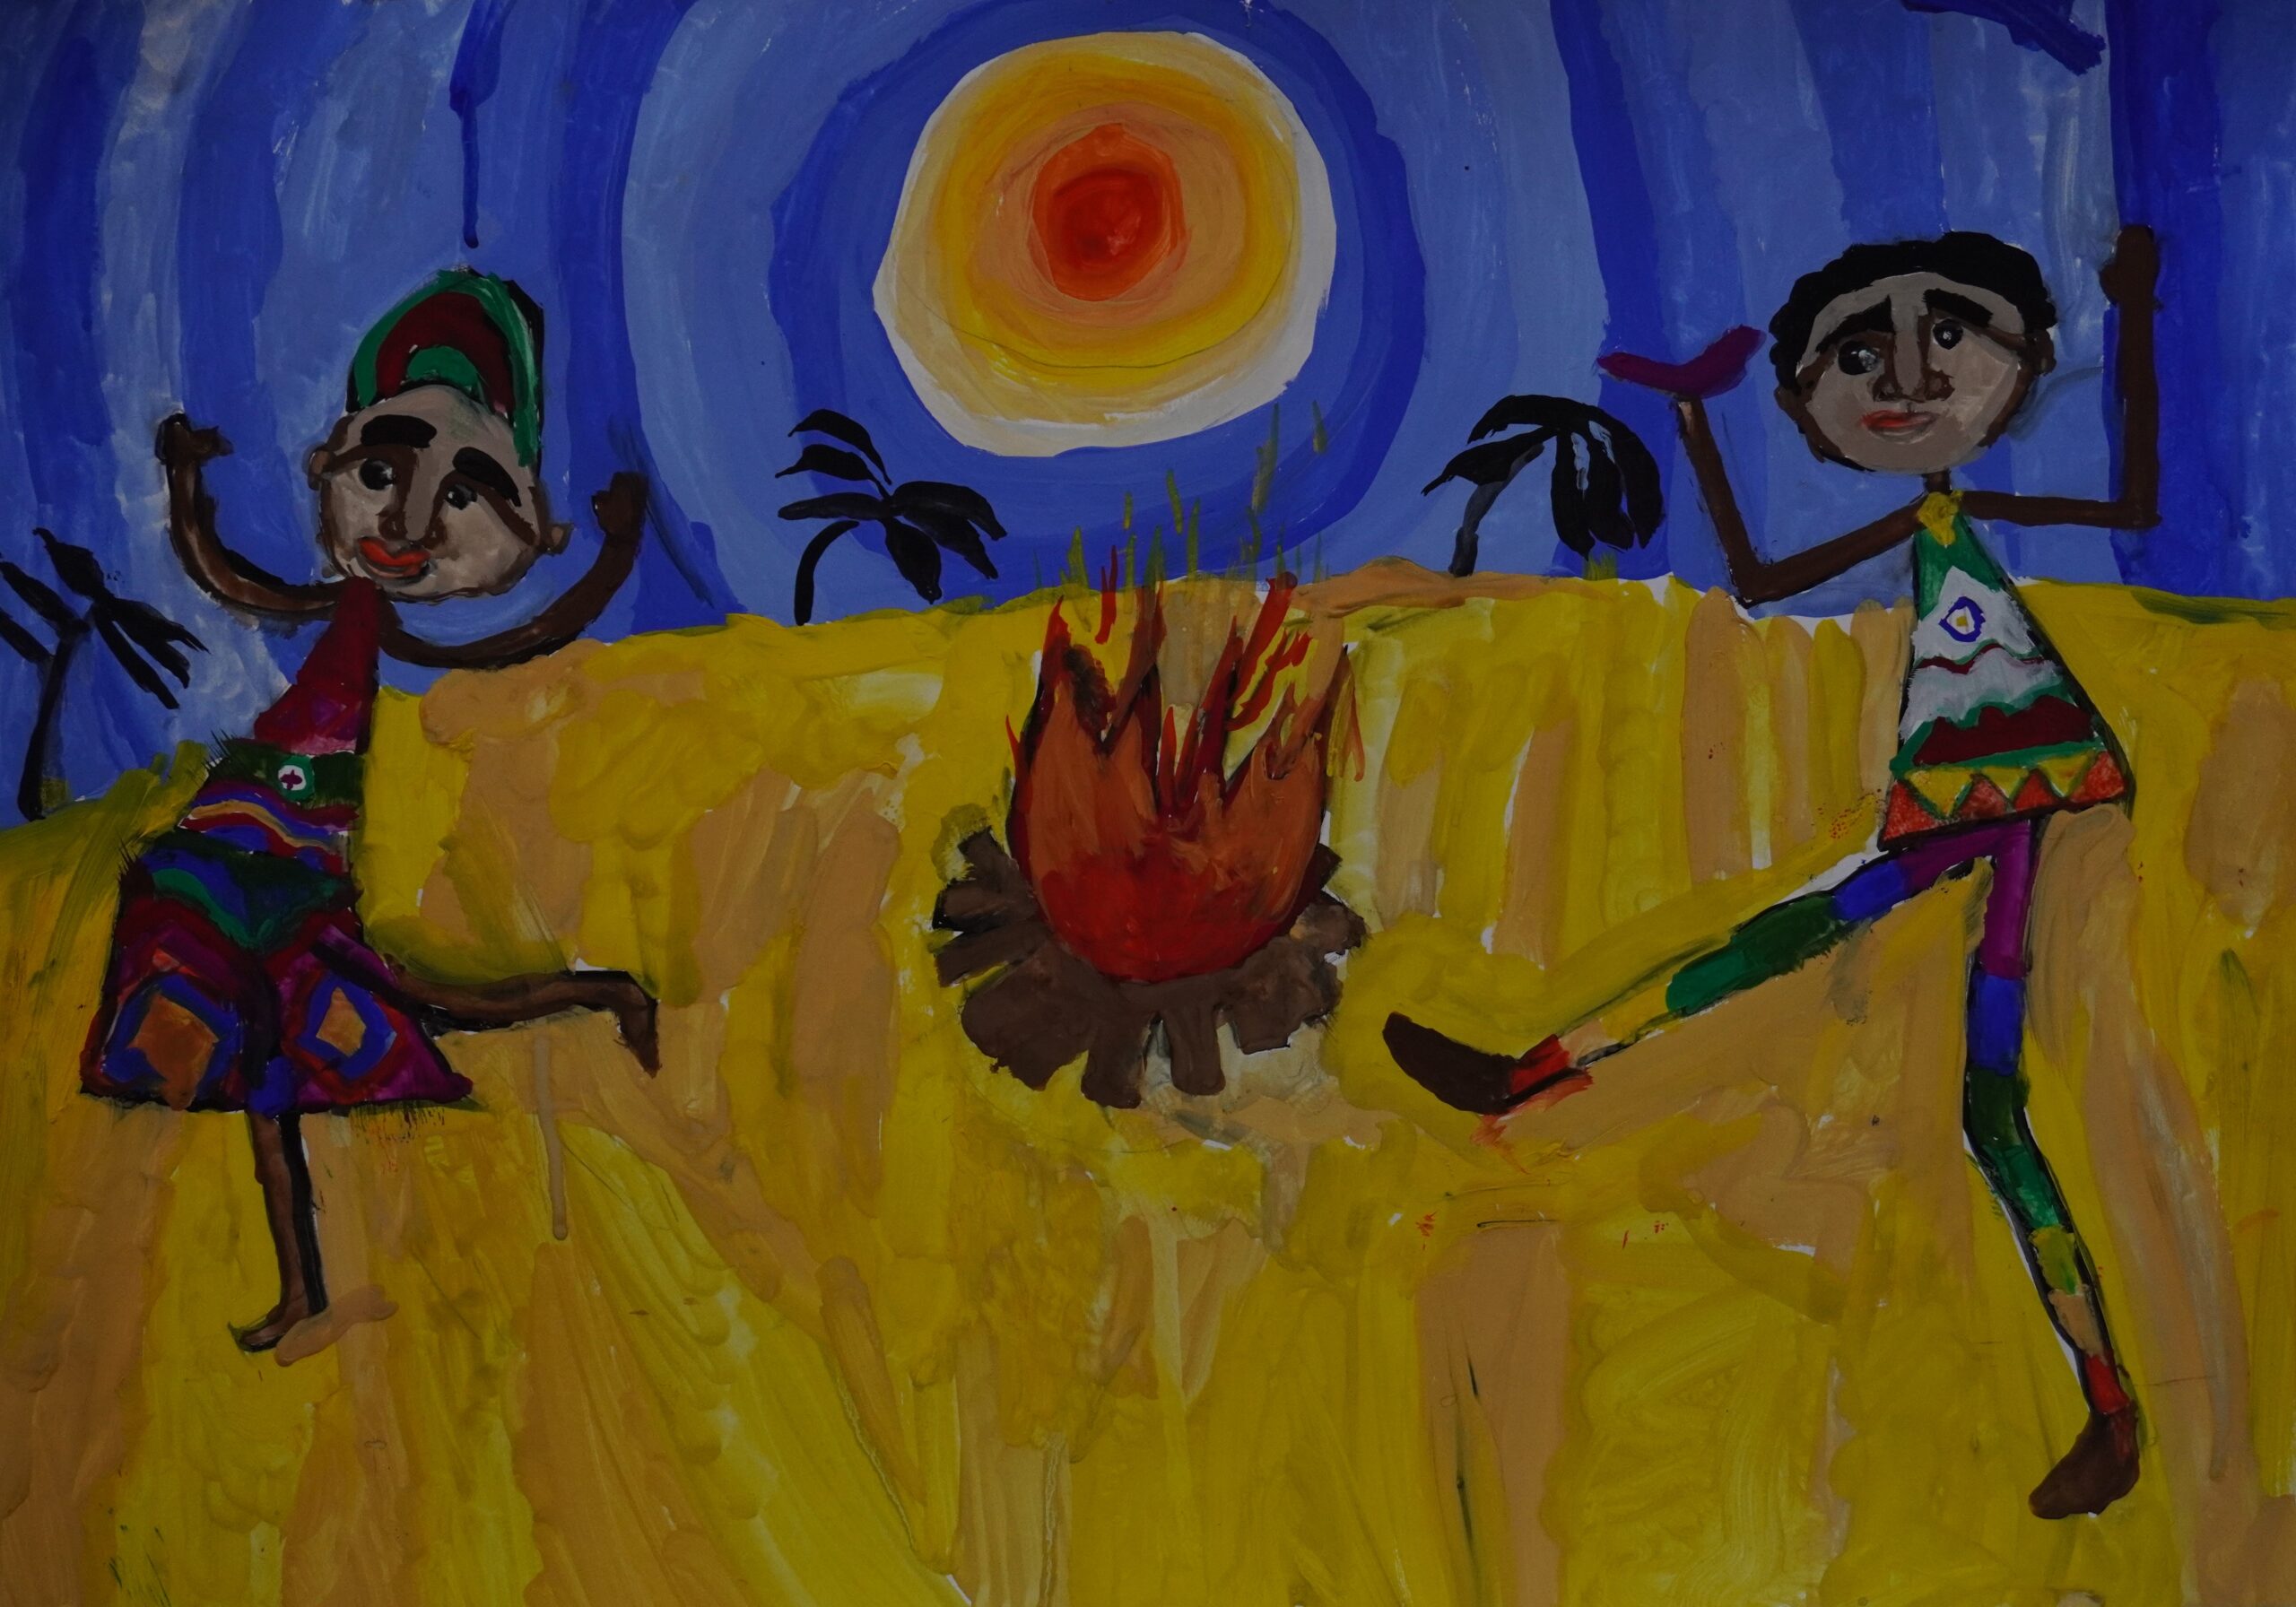 Дети и солнце. Рисунок по бушменской сказке «Как дети небо на солнце забросили»